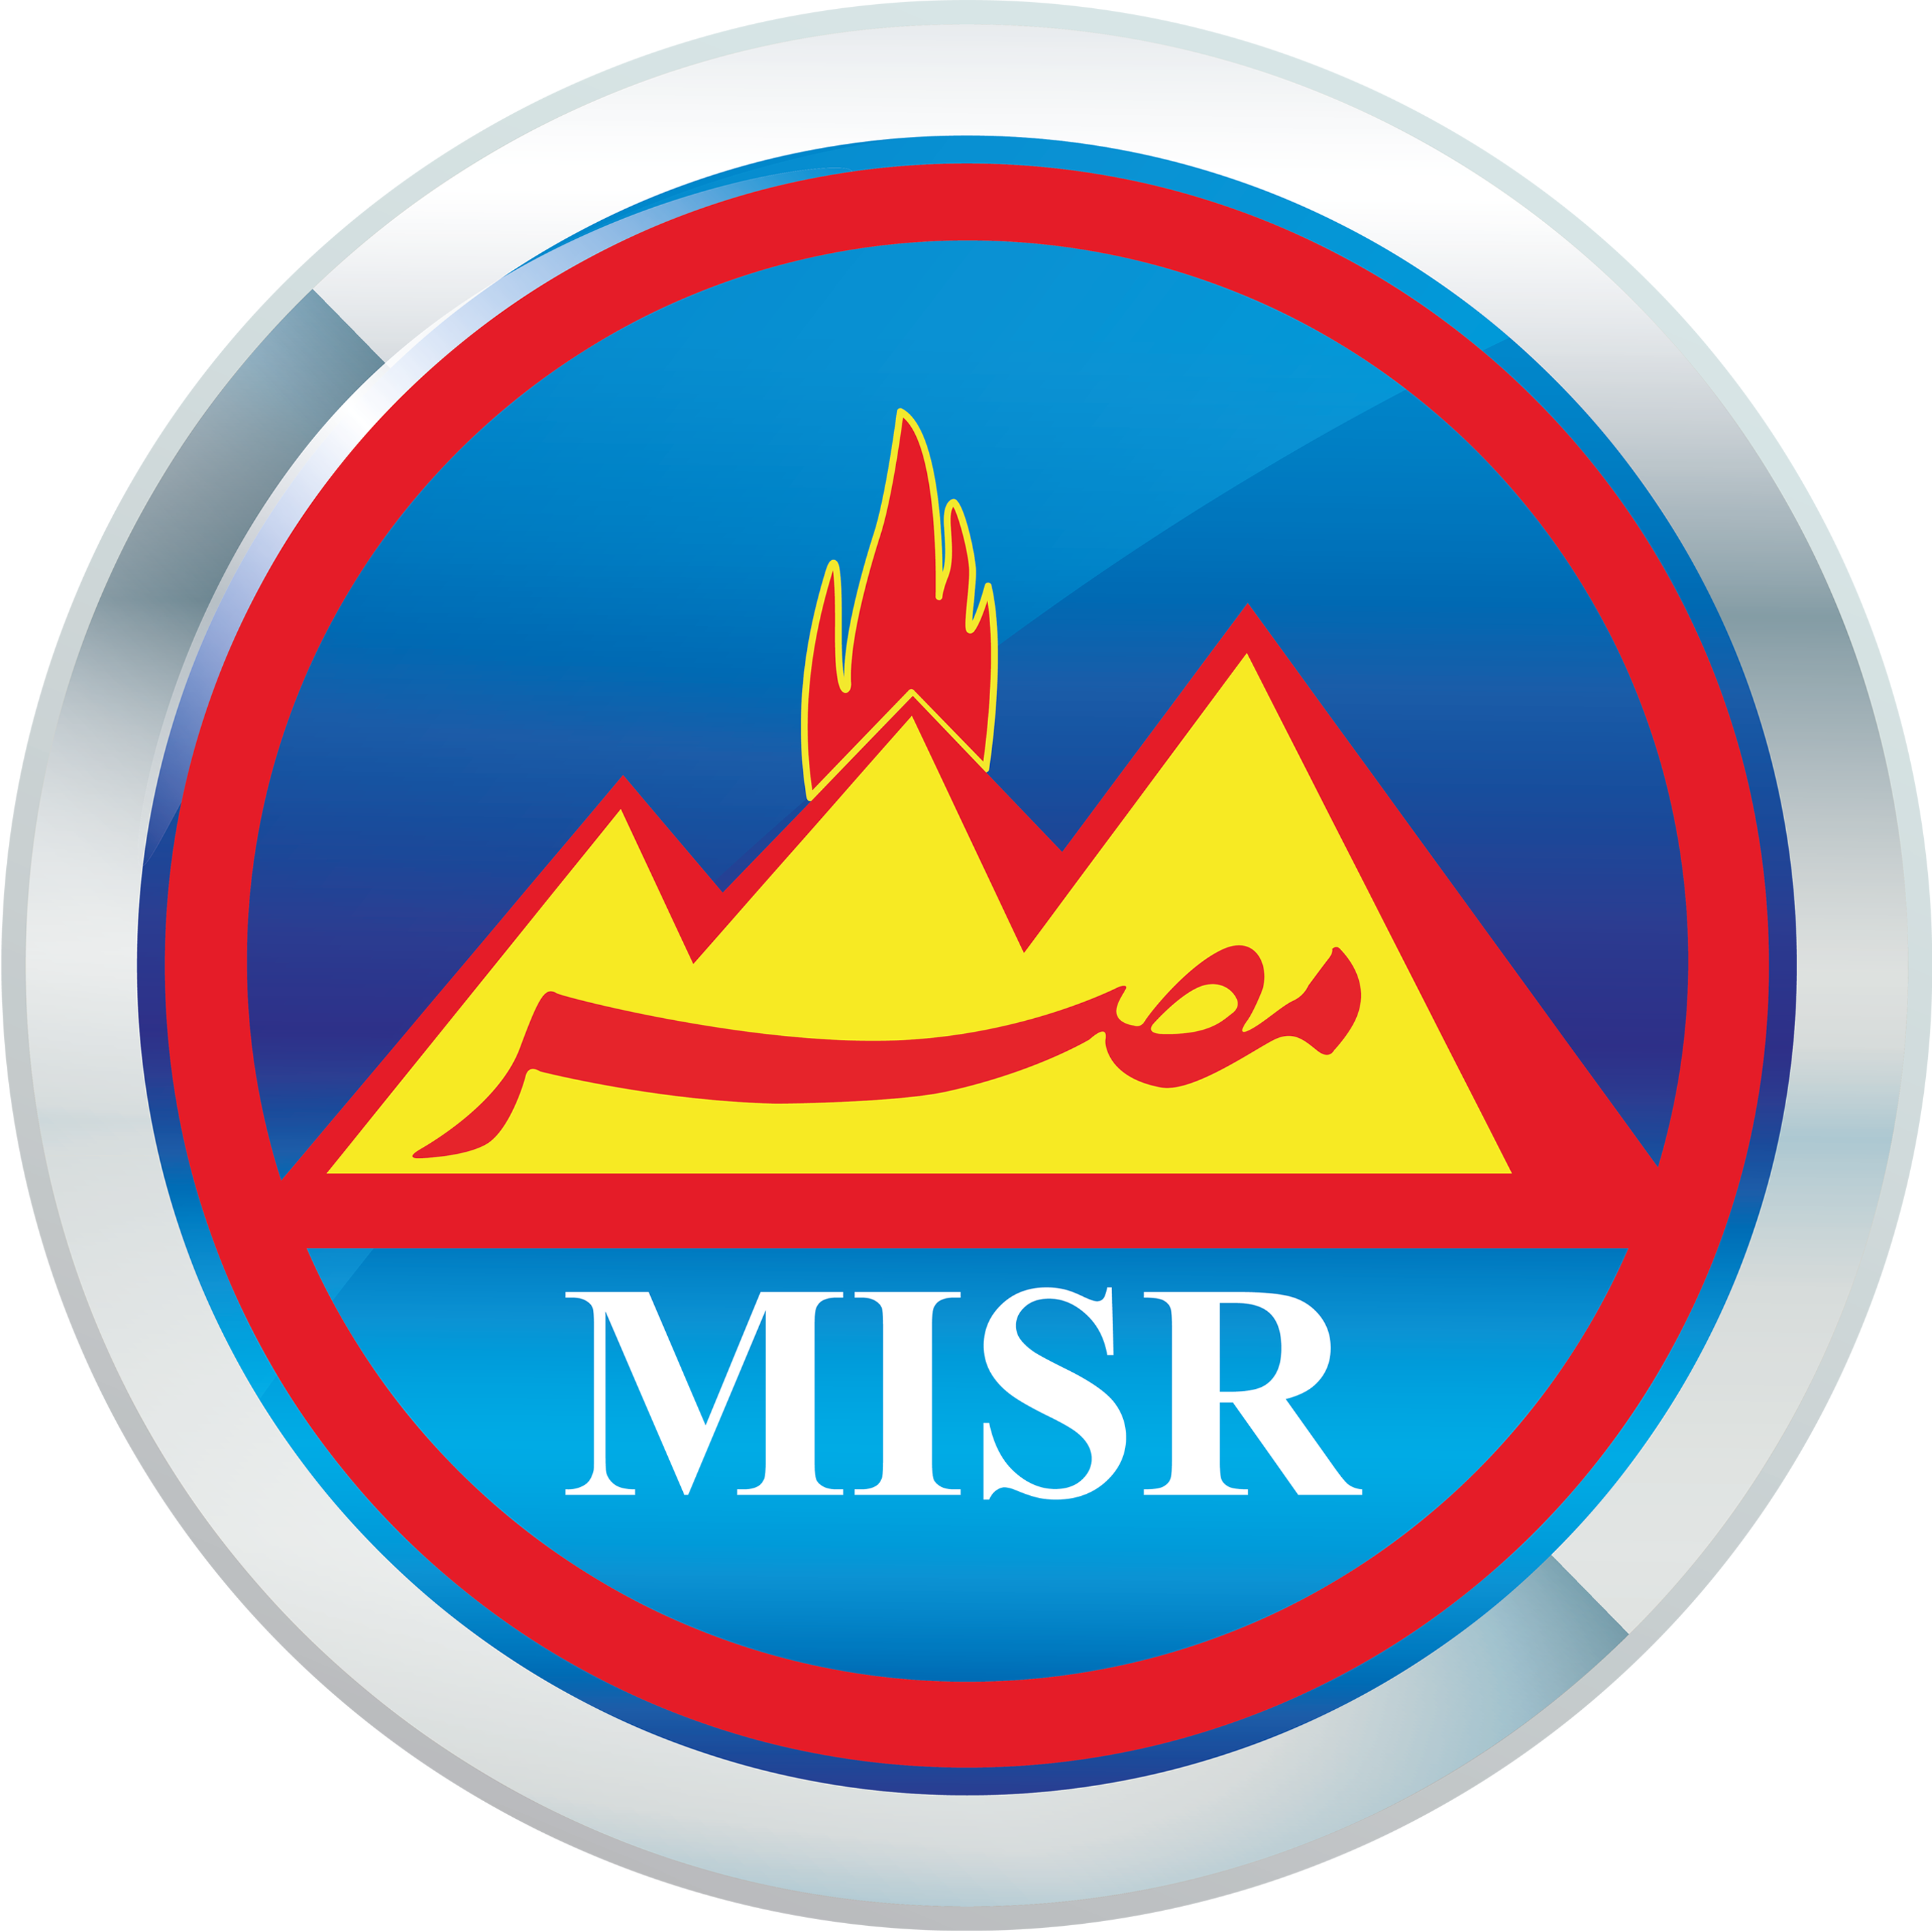 Misr Petroleum Company